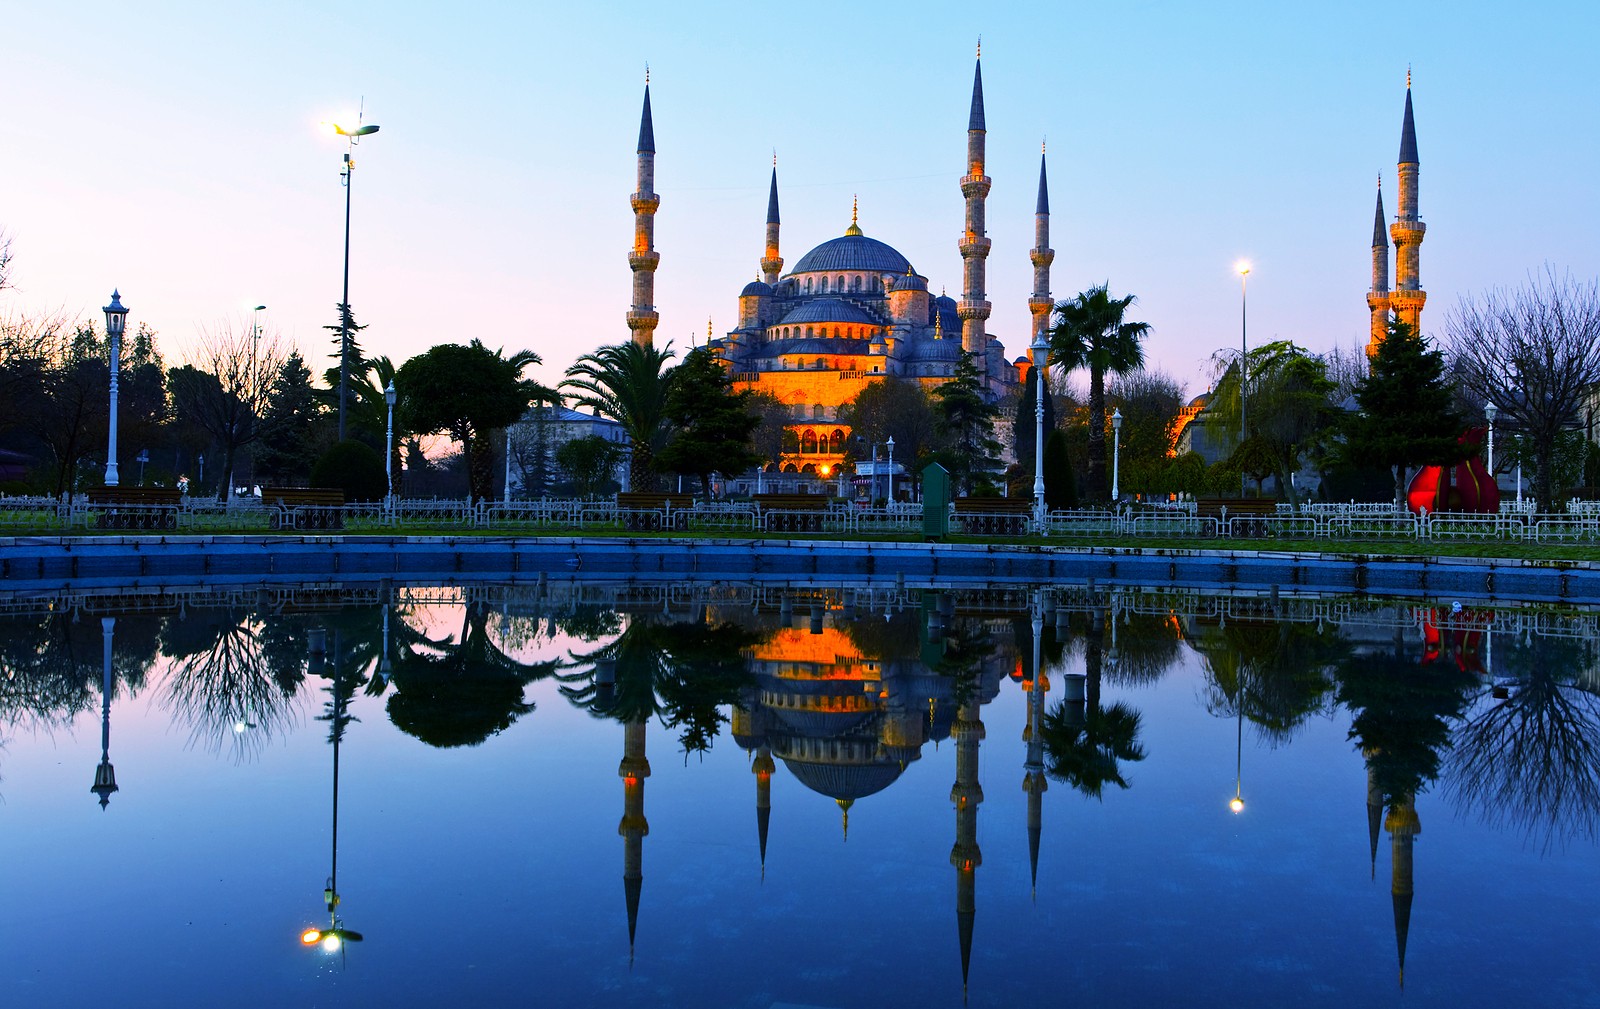 الجامع الازرق اسطنبول المتاحف والمساجد في اسطنبول